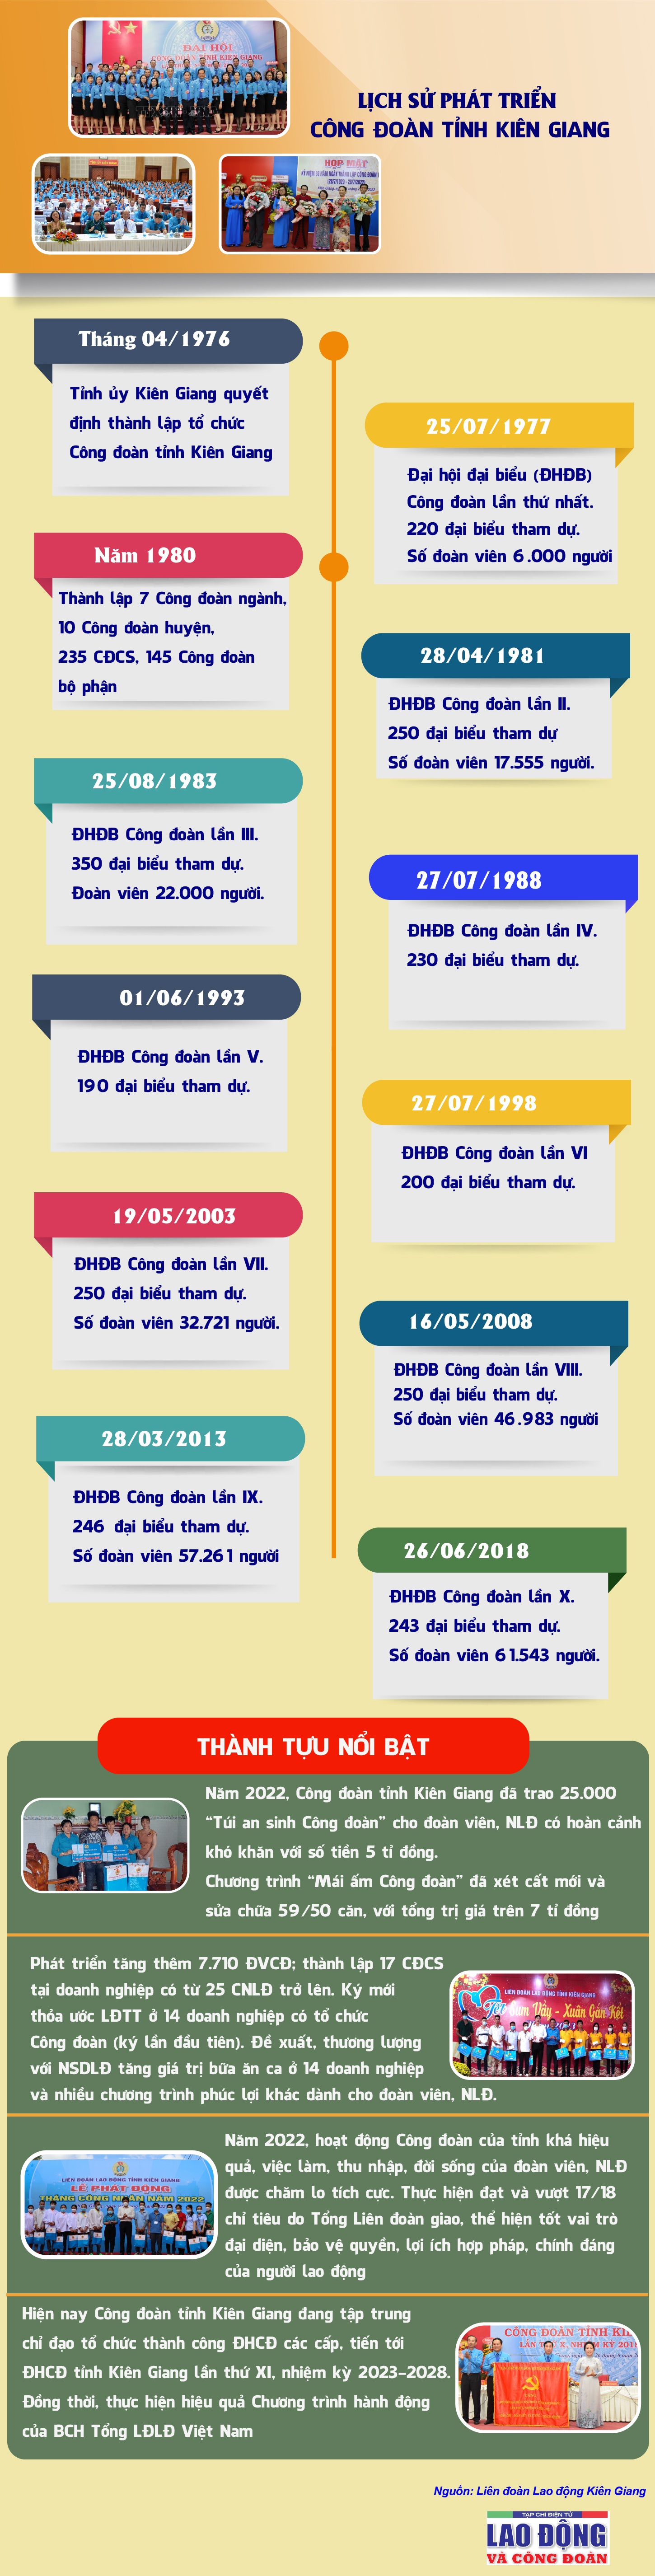 Lịch sử phát triển Công đoàn tỉnh Kiên Giang